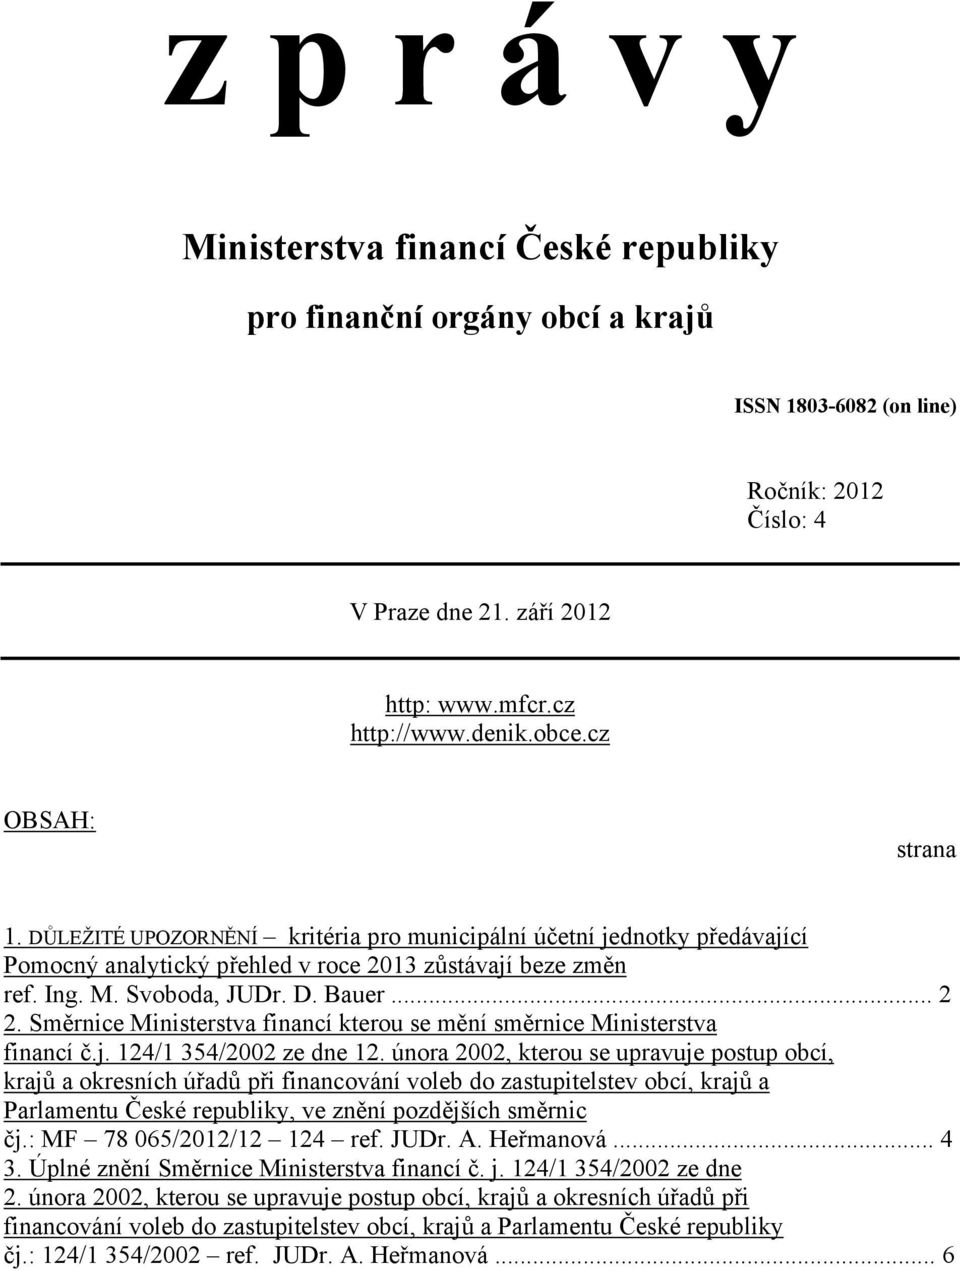 Směrnice Ministerstva financí kterou se mění směrnice Ministerstva financí č.j. 124/1 354/2002 ze dne 12.